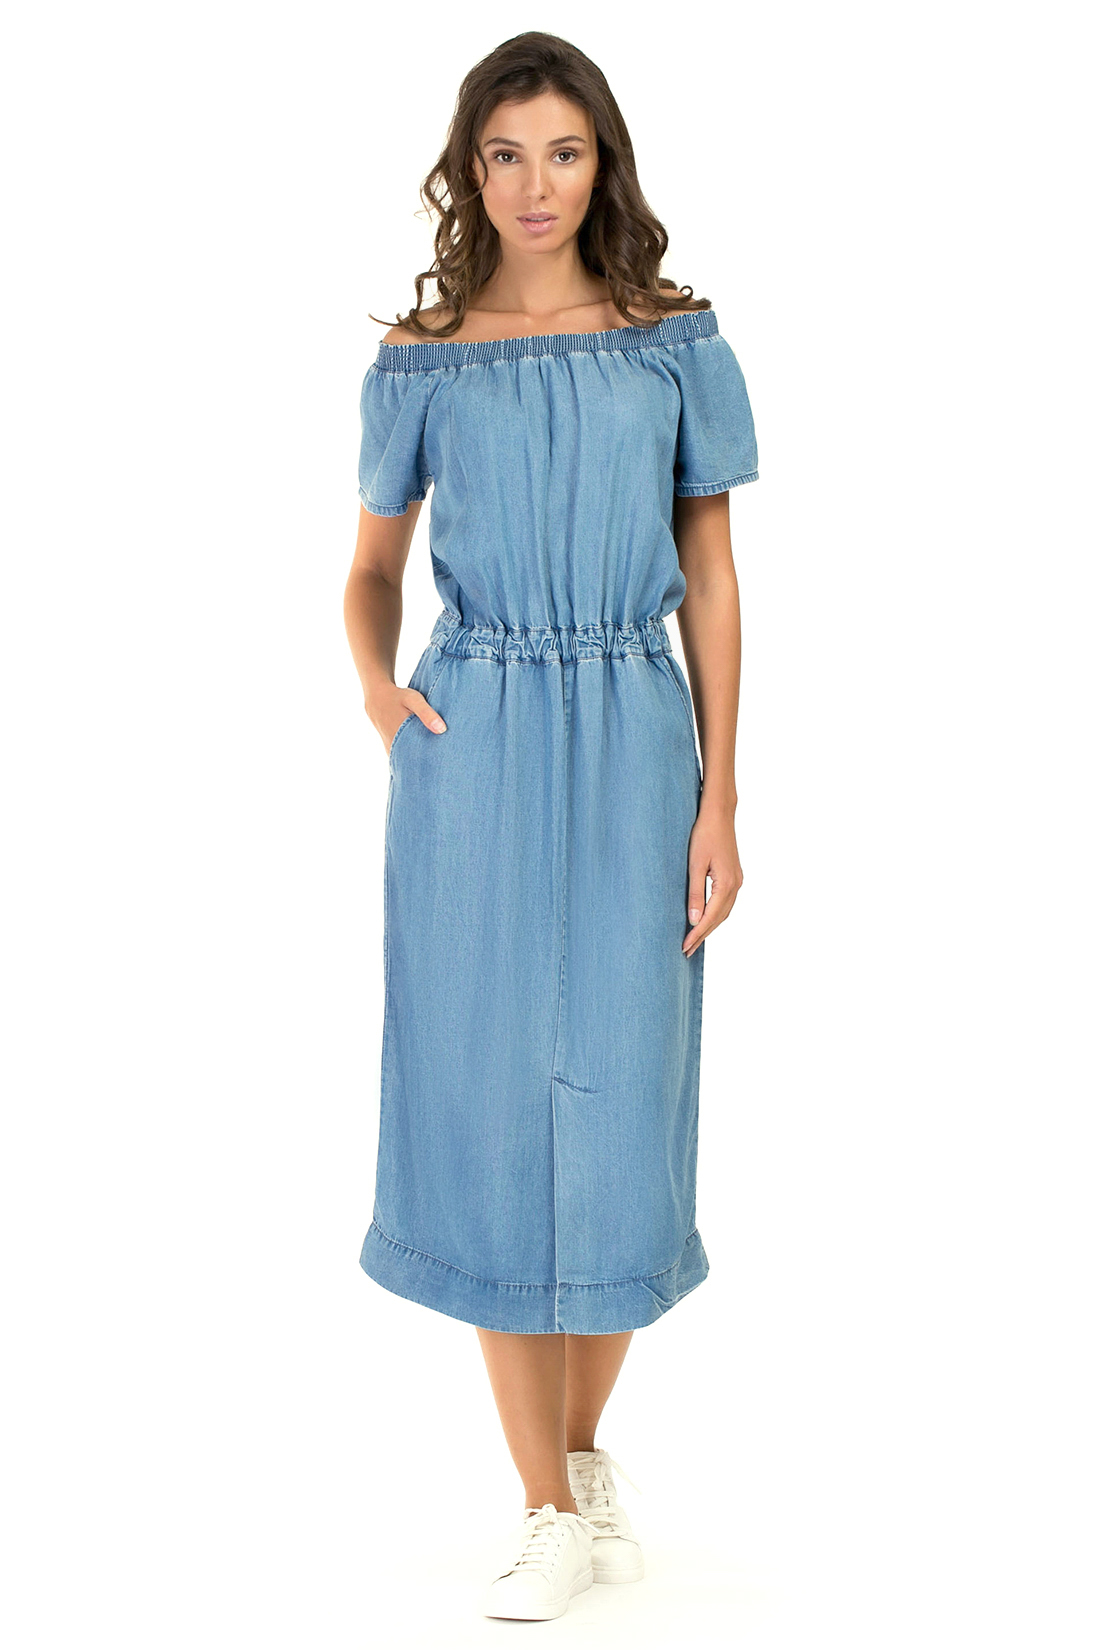 Платье с открытыми плечами из денима (арт. baon B457076), размер M, цвет light blue denim#голубой Платье с открытыми плечами из денима (арт. baon B457076) - фото 1